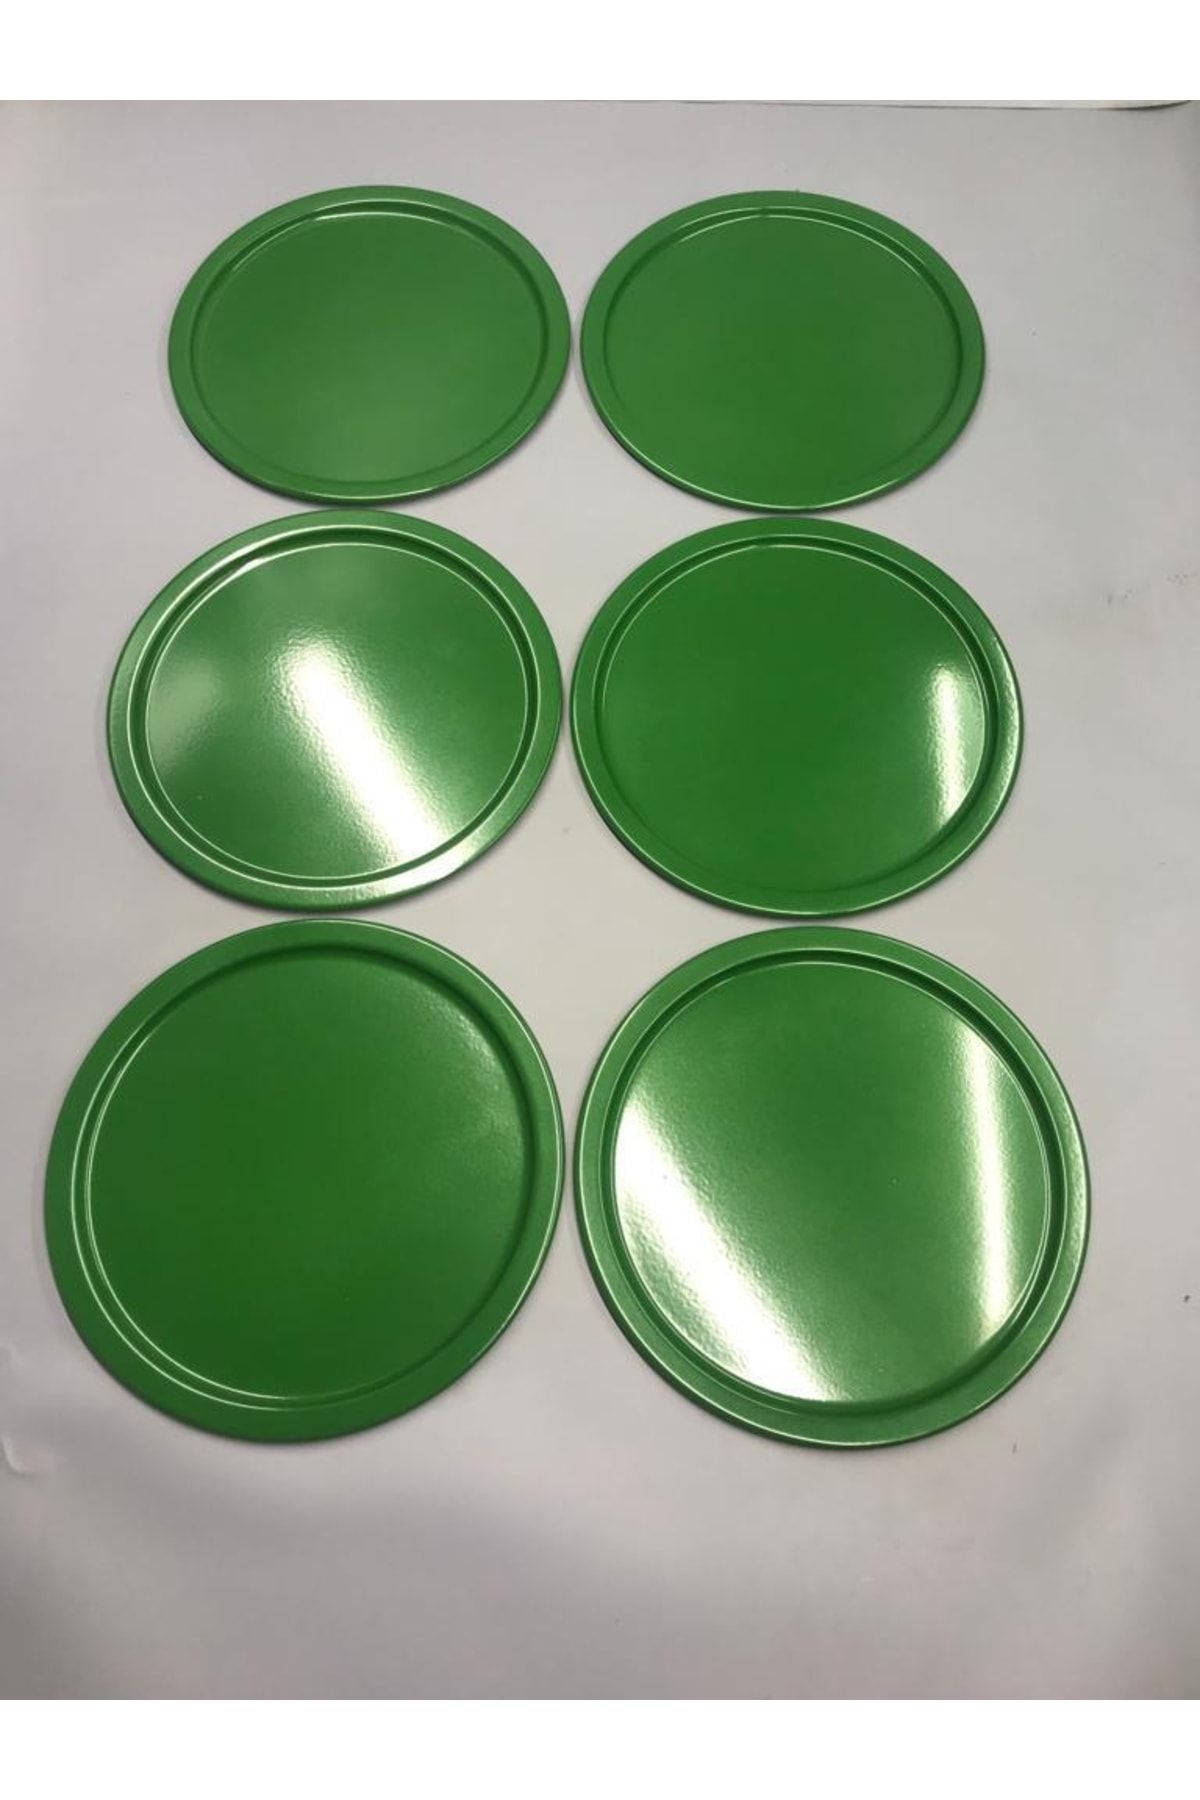 Mira züccaciye 6'lı Metal Yeşil Tek Kişilik Dekoratif Çay, Kahve Ve Pasta Servisi Sunum Tepsisi 23 Cm